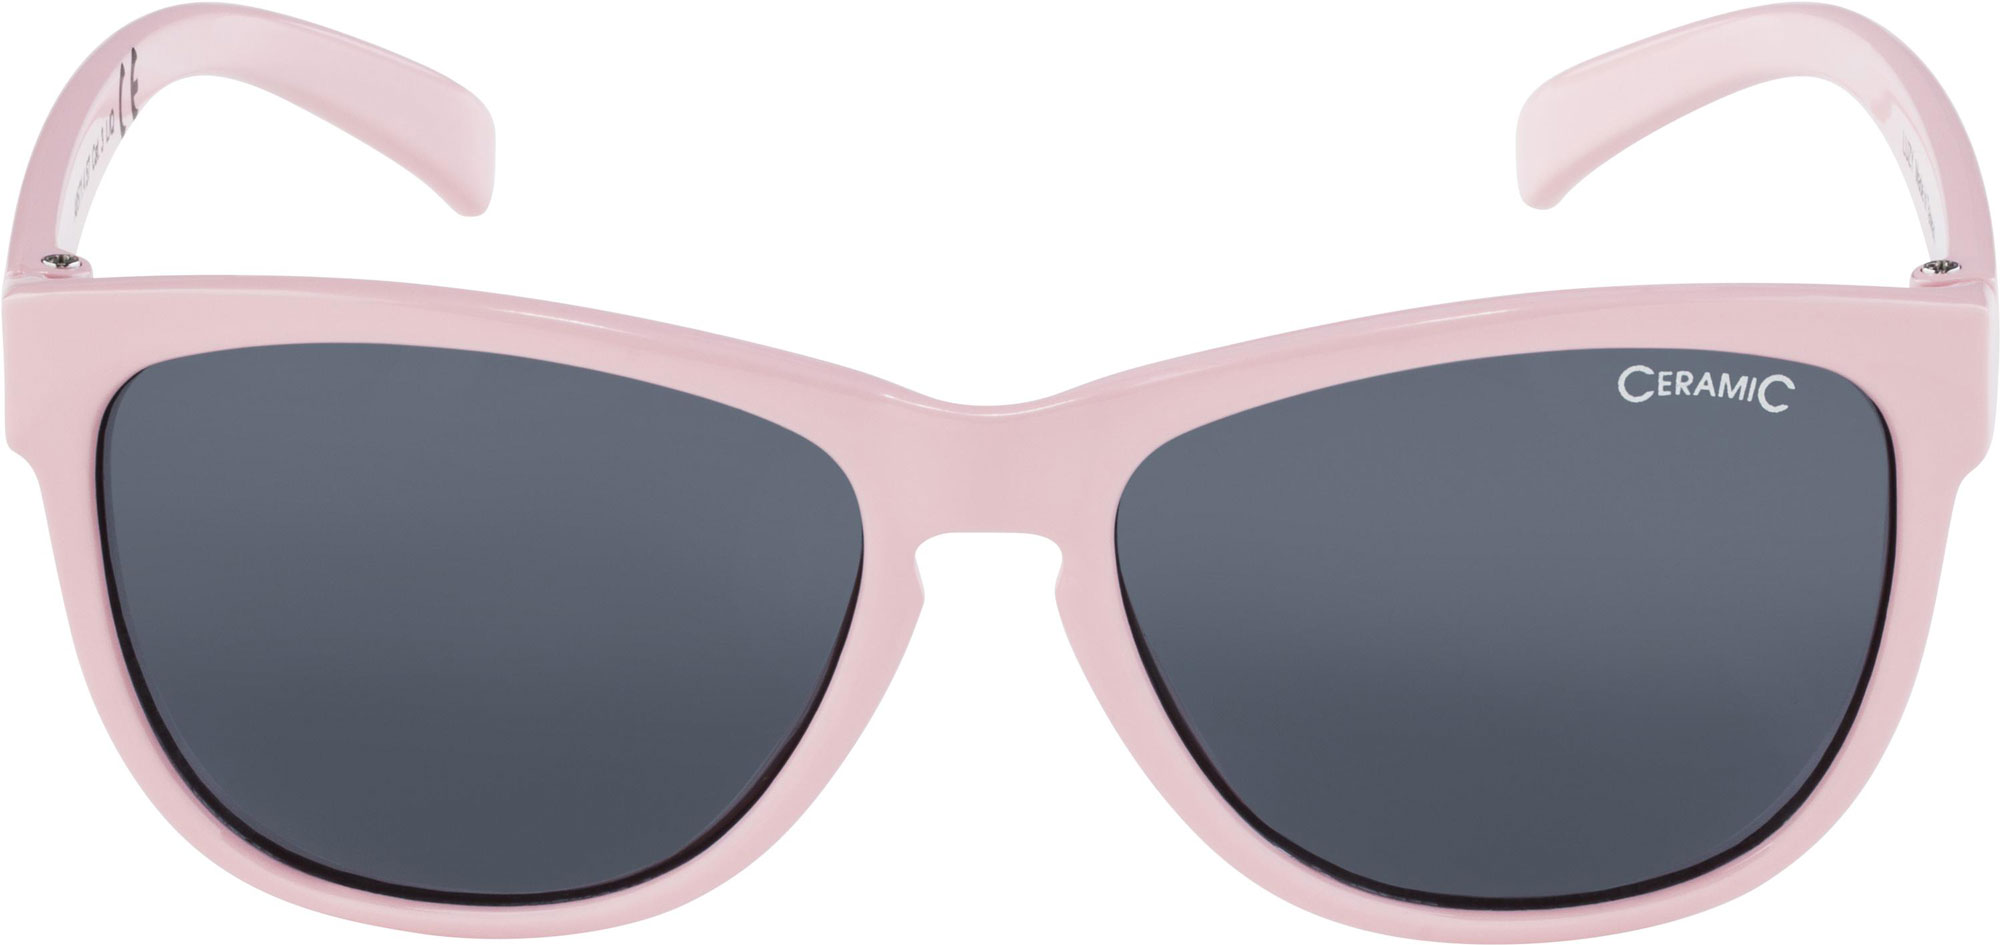 Women’s sunglasses